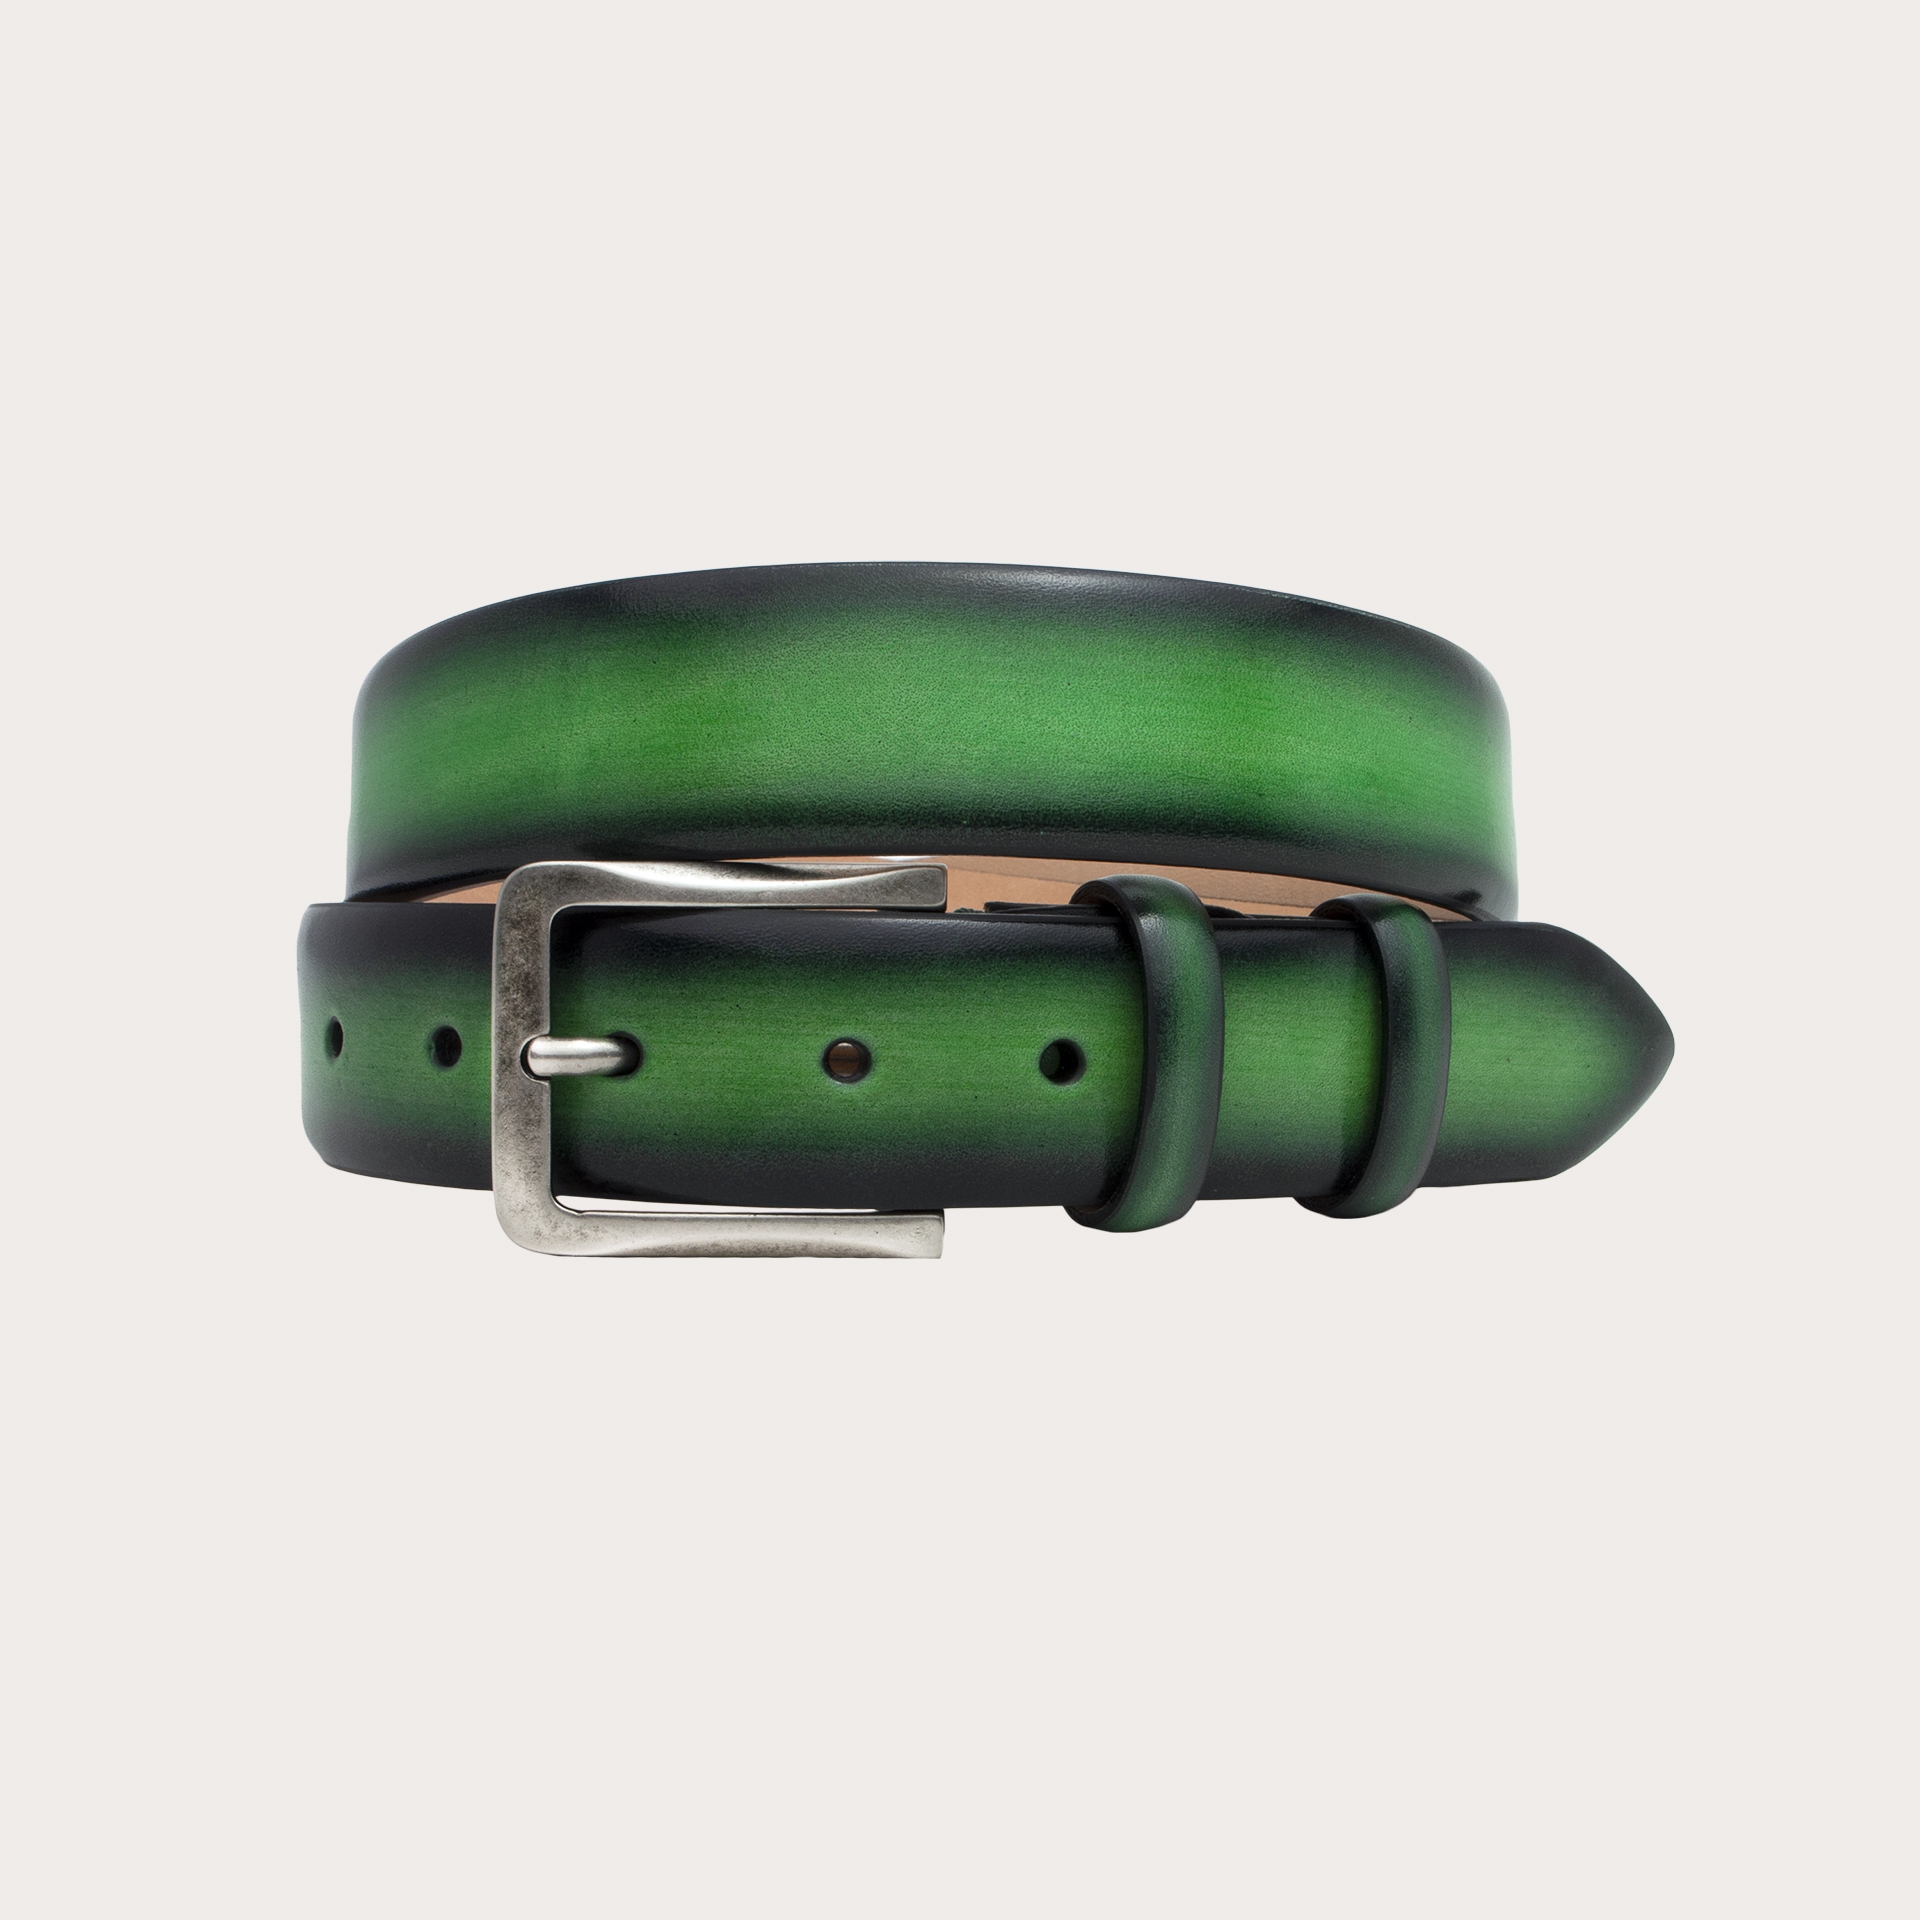 BRUCLE Originale cintura verde in cuoio tamponato e sfumato a mano